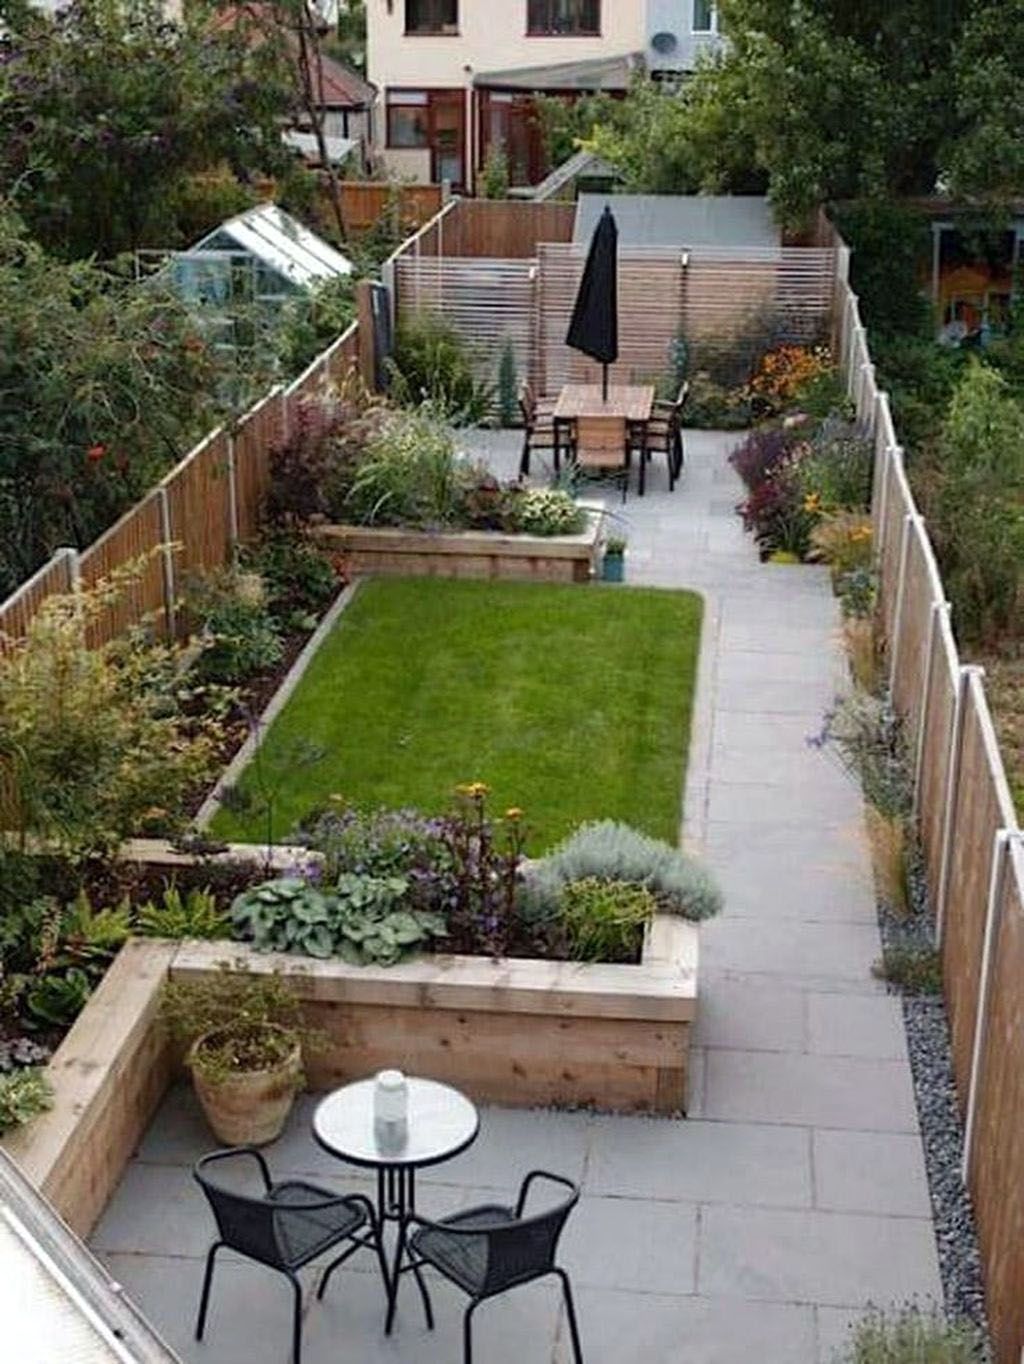 Kreative Gartenideen Best Of Super Creative Patio Garden Design Ideas Uk that Will